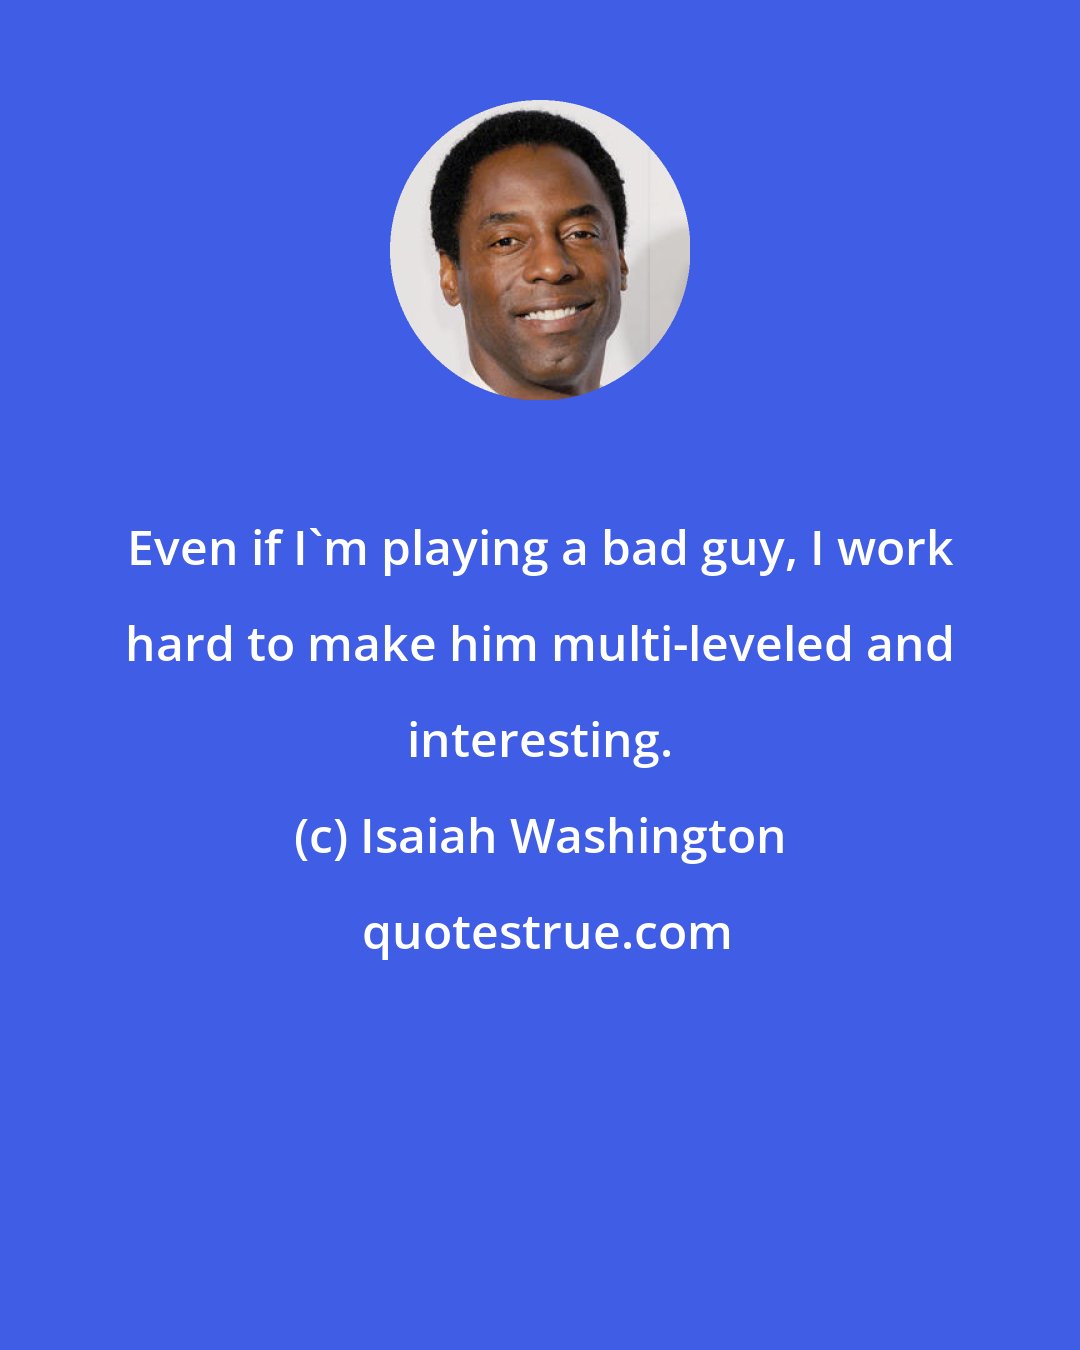 Isaiah Washington: Even if I'm playing a bad guy, I work hard to make him multi-leveled and interesting.